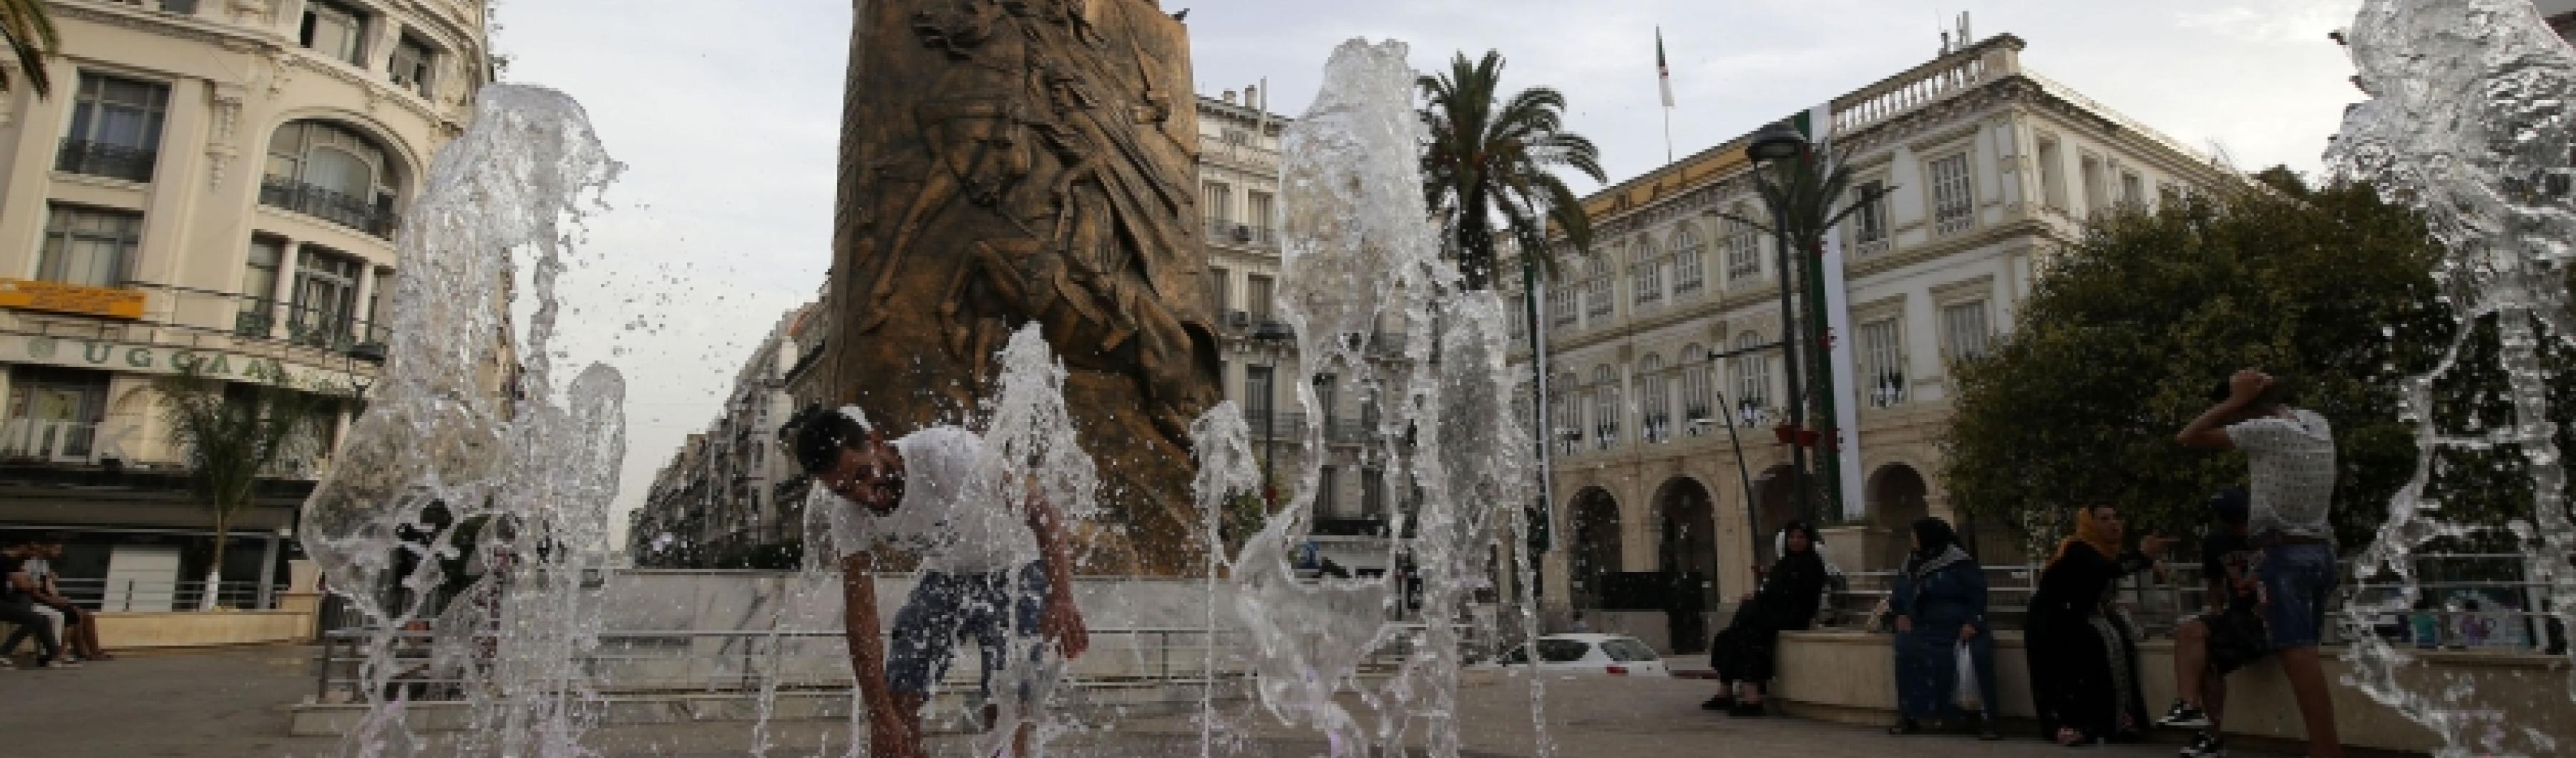 Un homme se rafraîchit dans une pataugeoire du centre-ville d'Alger, en Algérie, où les températures ont atteint 42°C dans le cadre d'une vague de chaleur qui touche une grande partie de l'Afrique du Nord. 